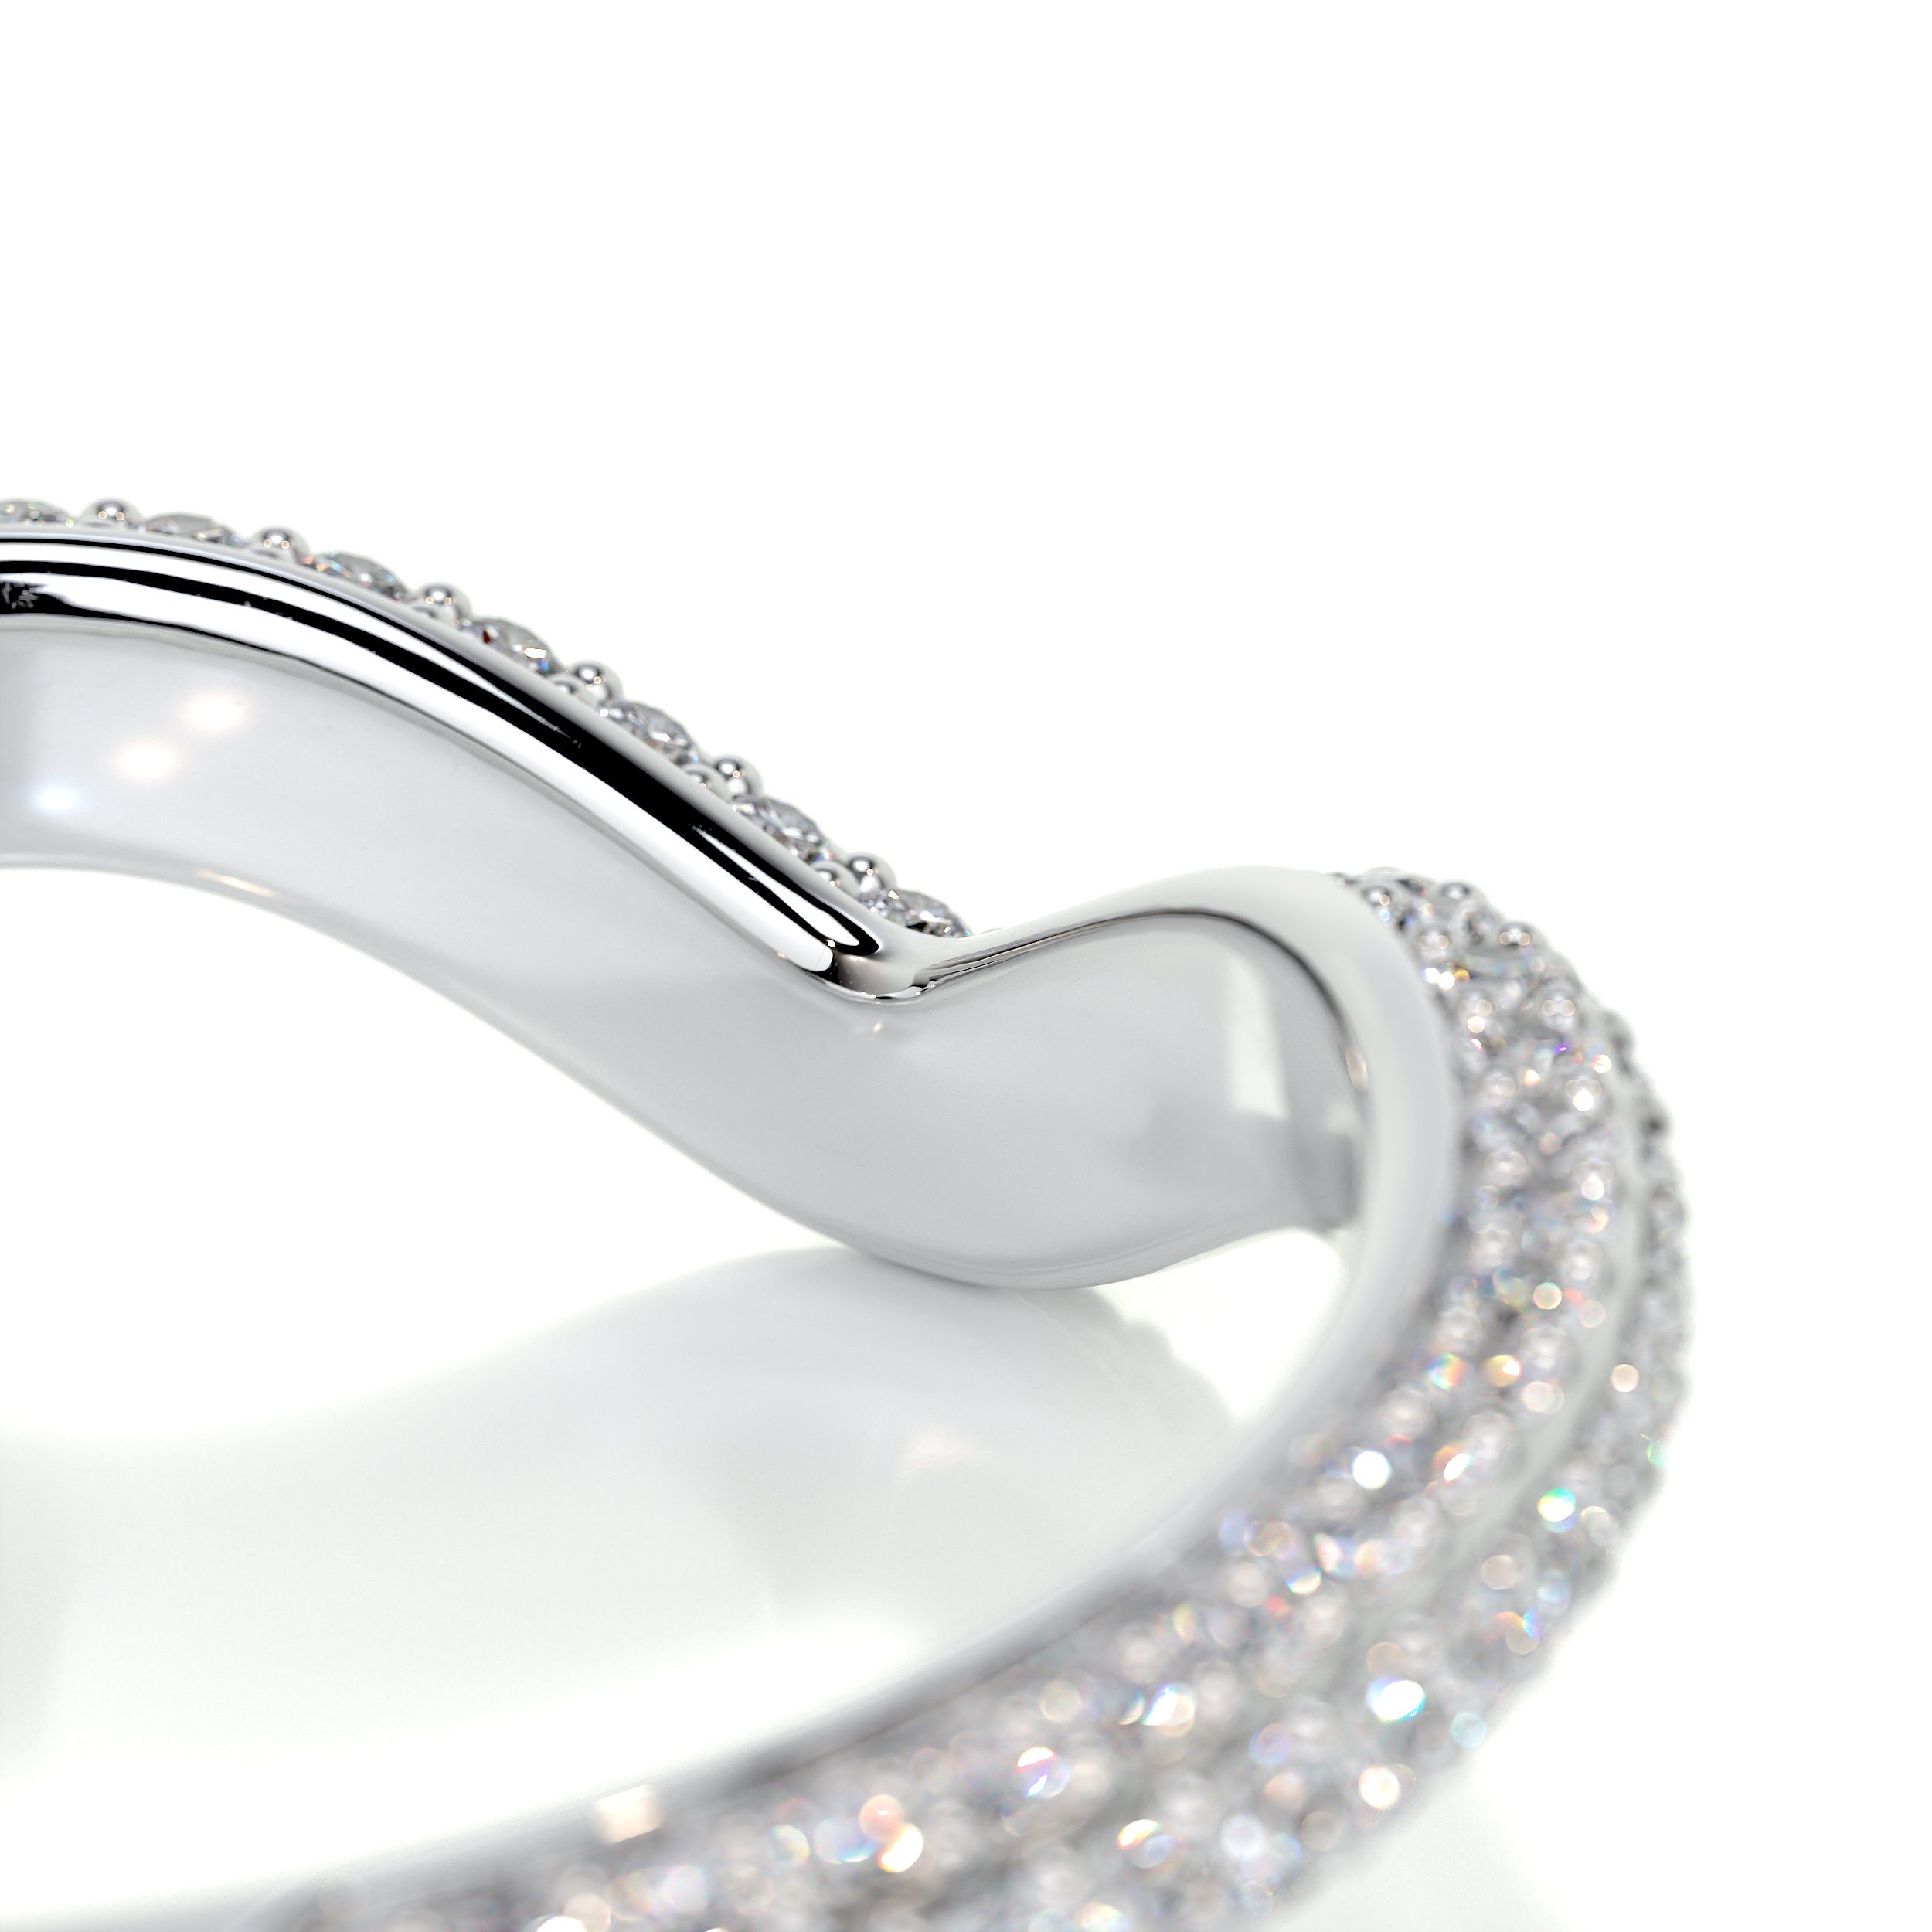 Anastasia Curved Wedding Ring   (0.75 Carat) -14K White Gold (RTS)